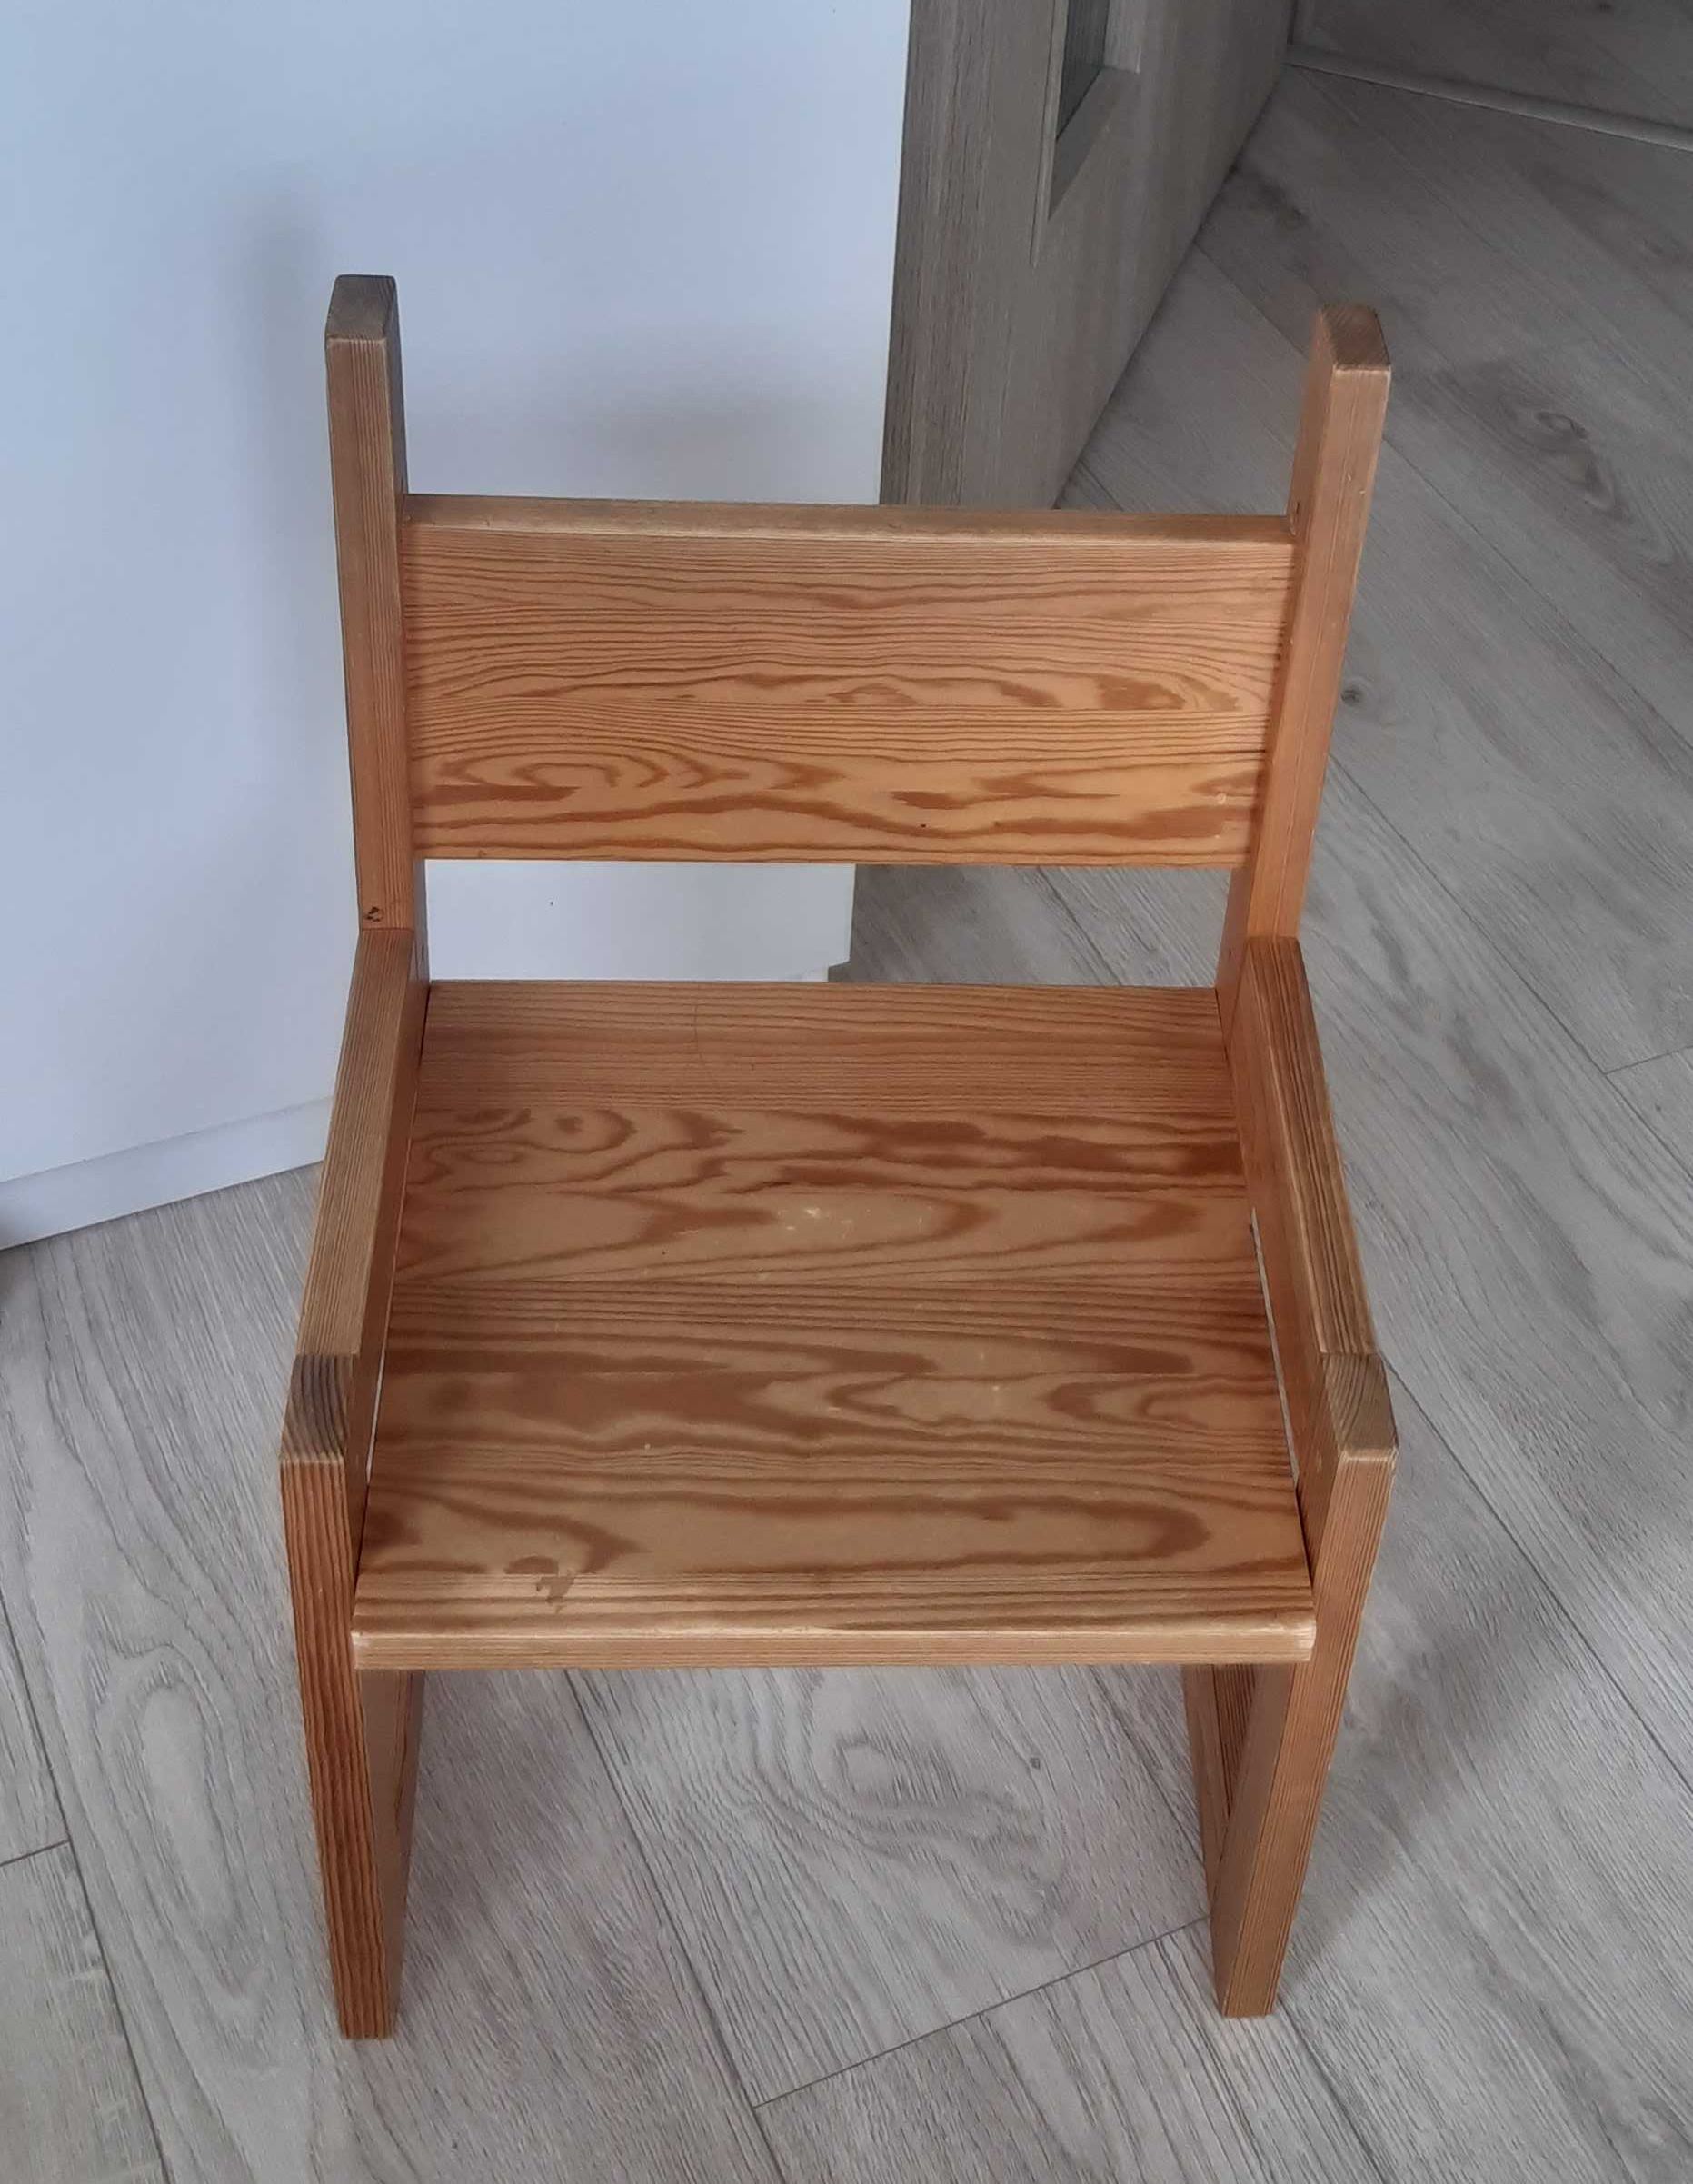 Drewniany stolik i krzesełko dla dziecka